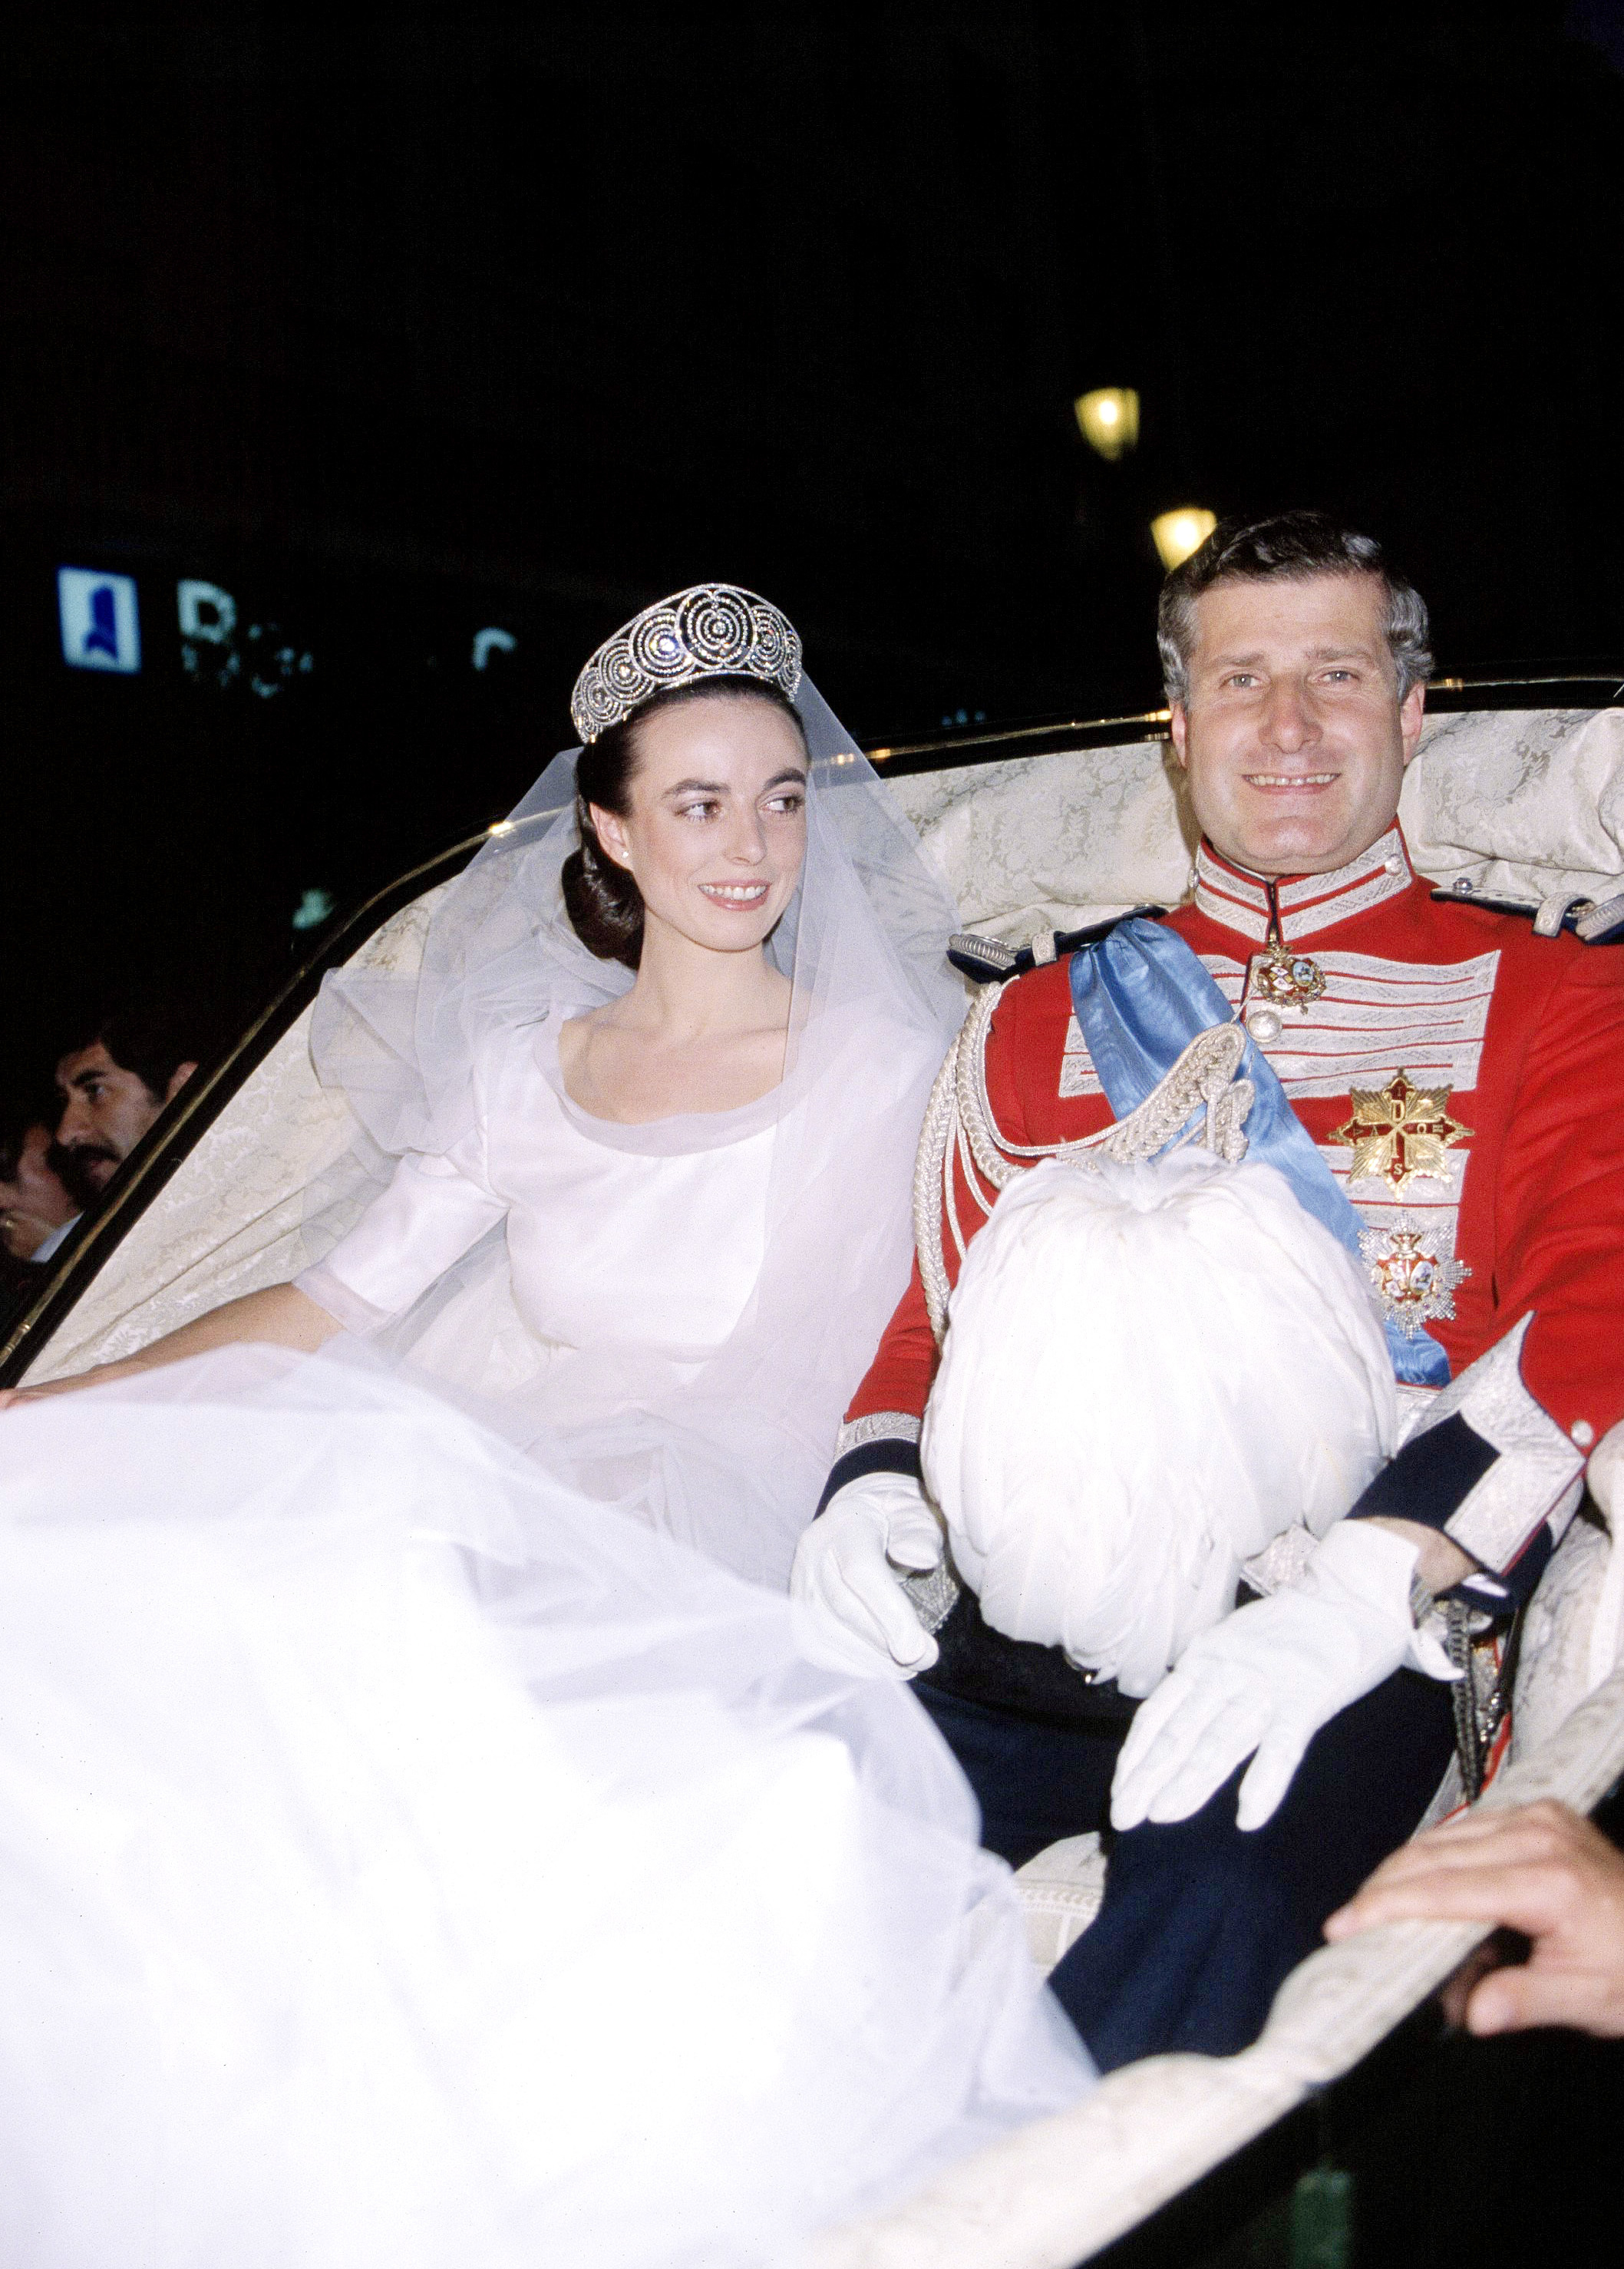 ALT: Boda del duque de Alba y Matilde Sols con la tiara rusa.